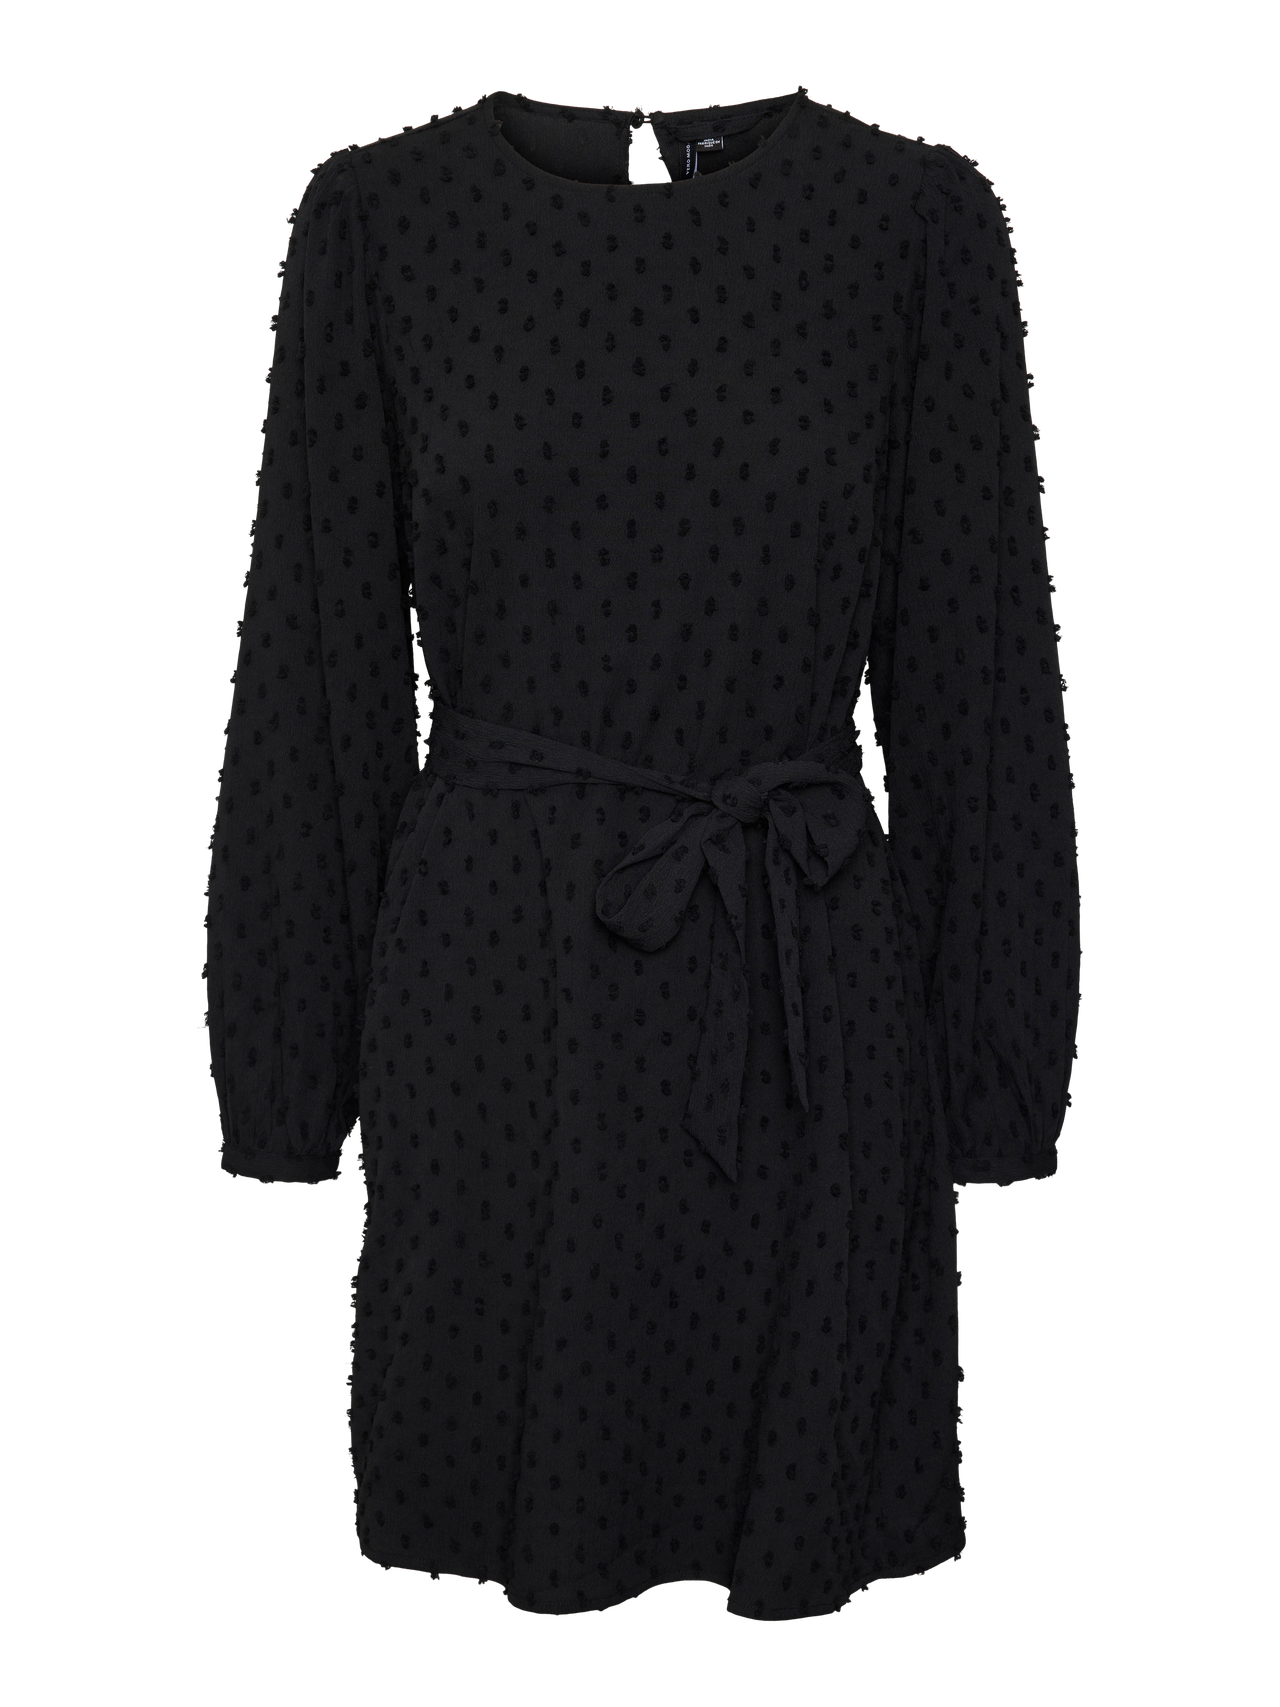 Vero Moda VMVILLA Korte jurk -Black - 10314043